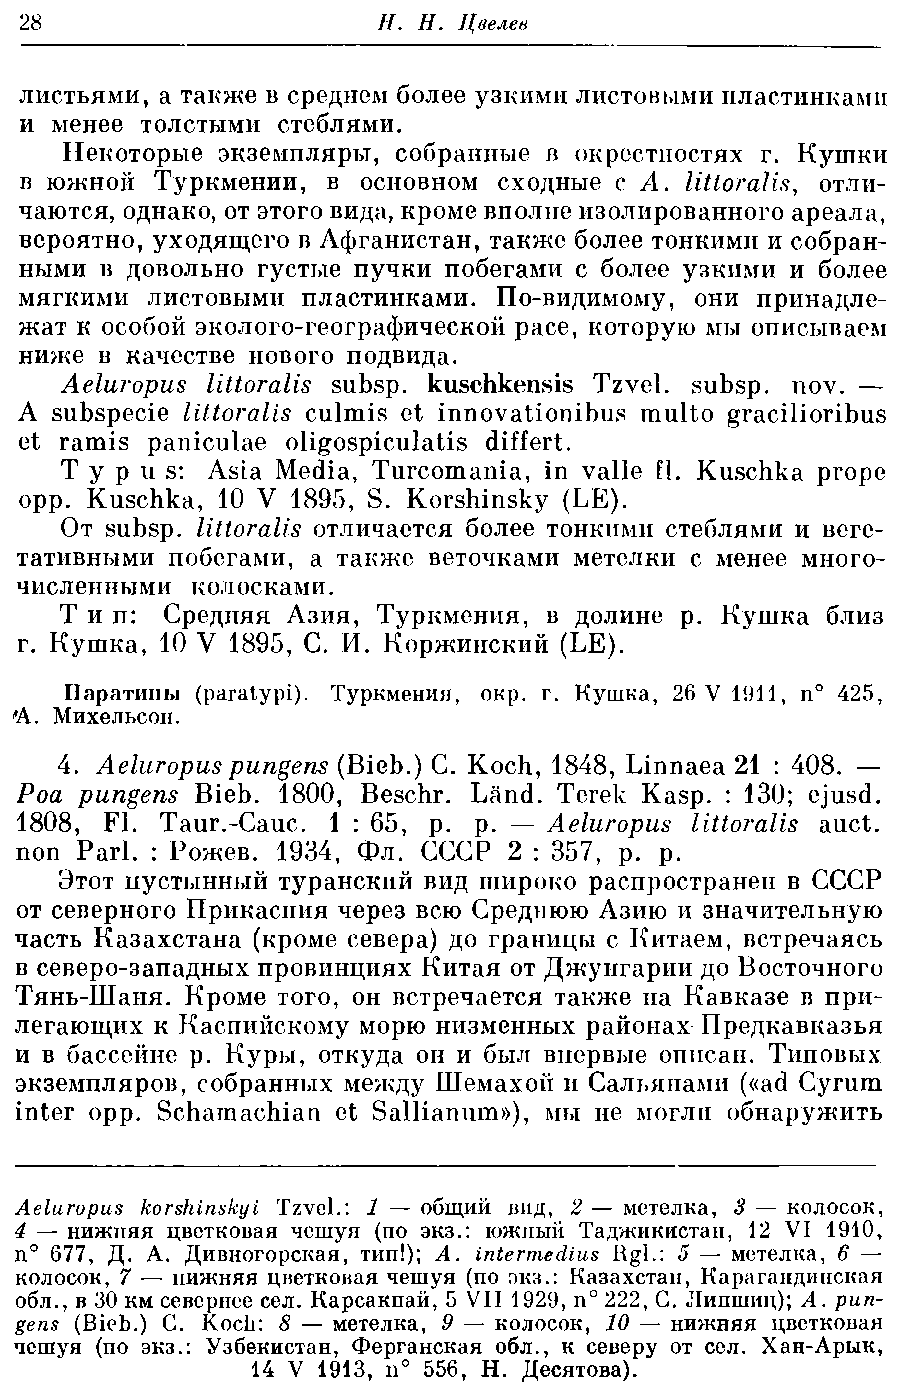 https://forum.plantarium.ru/misc.php?action=pun_attachment&amp;item=29418